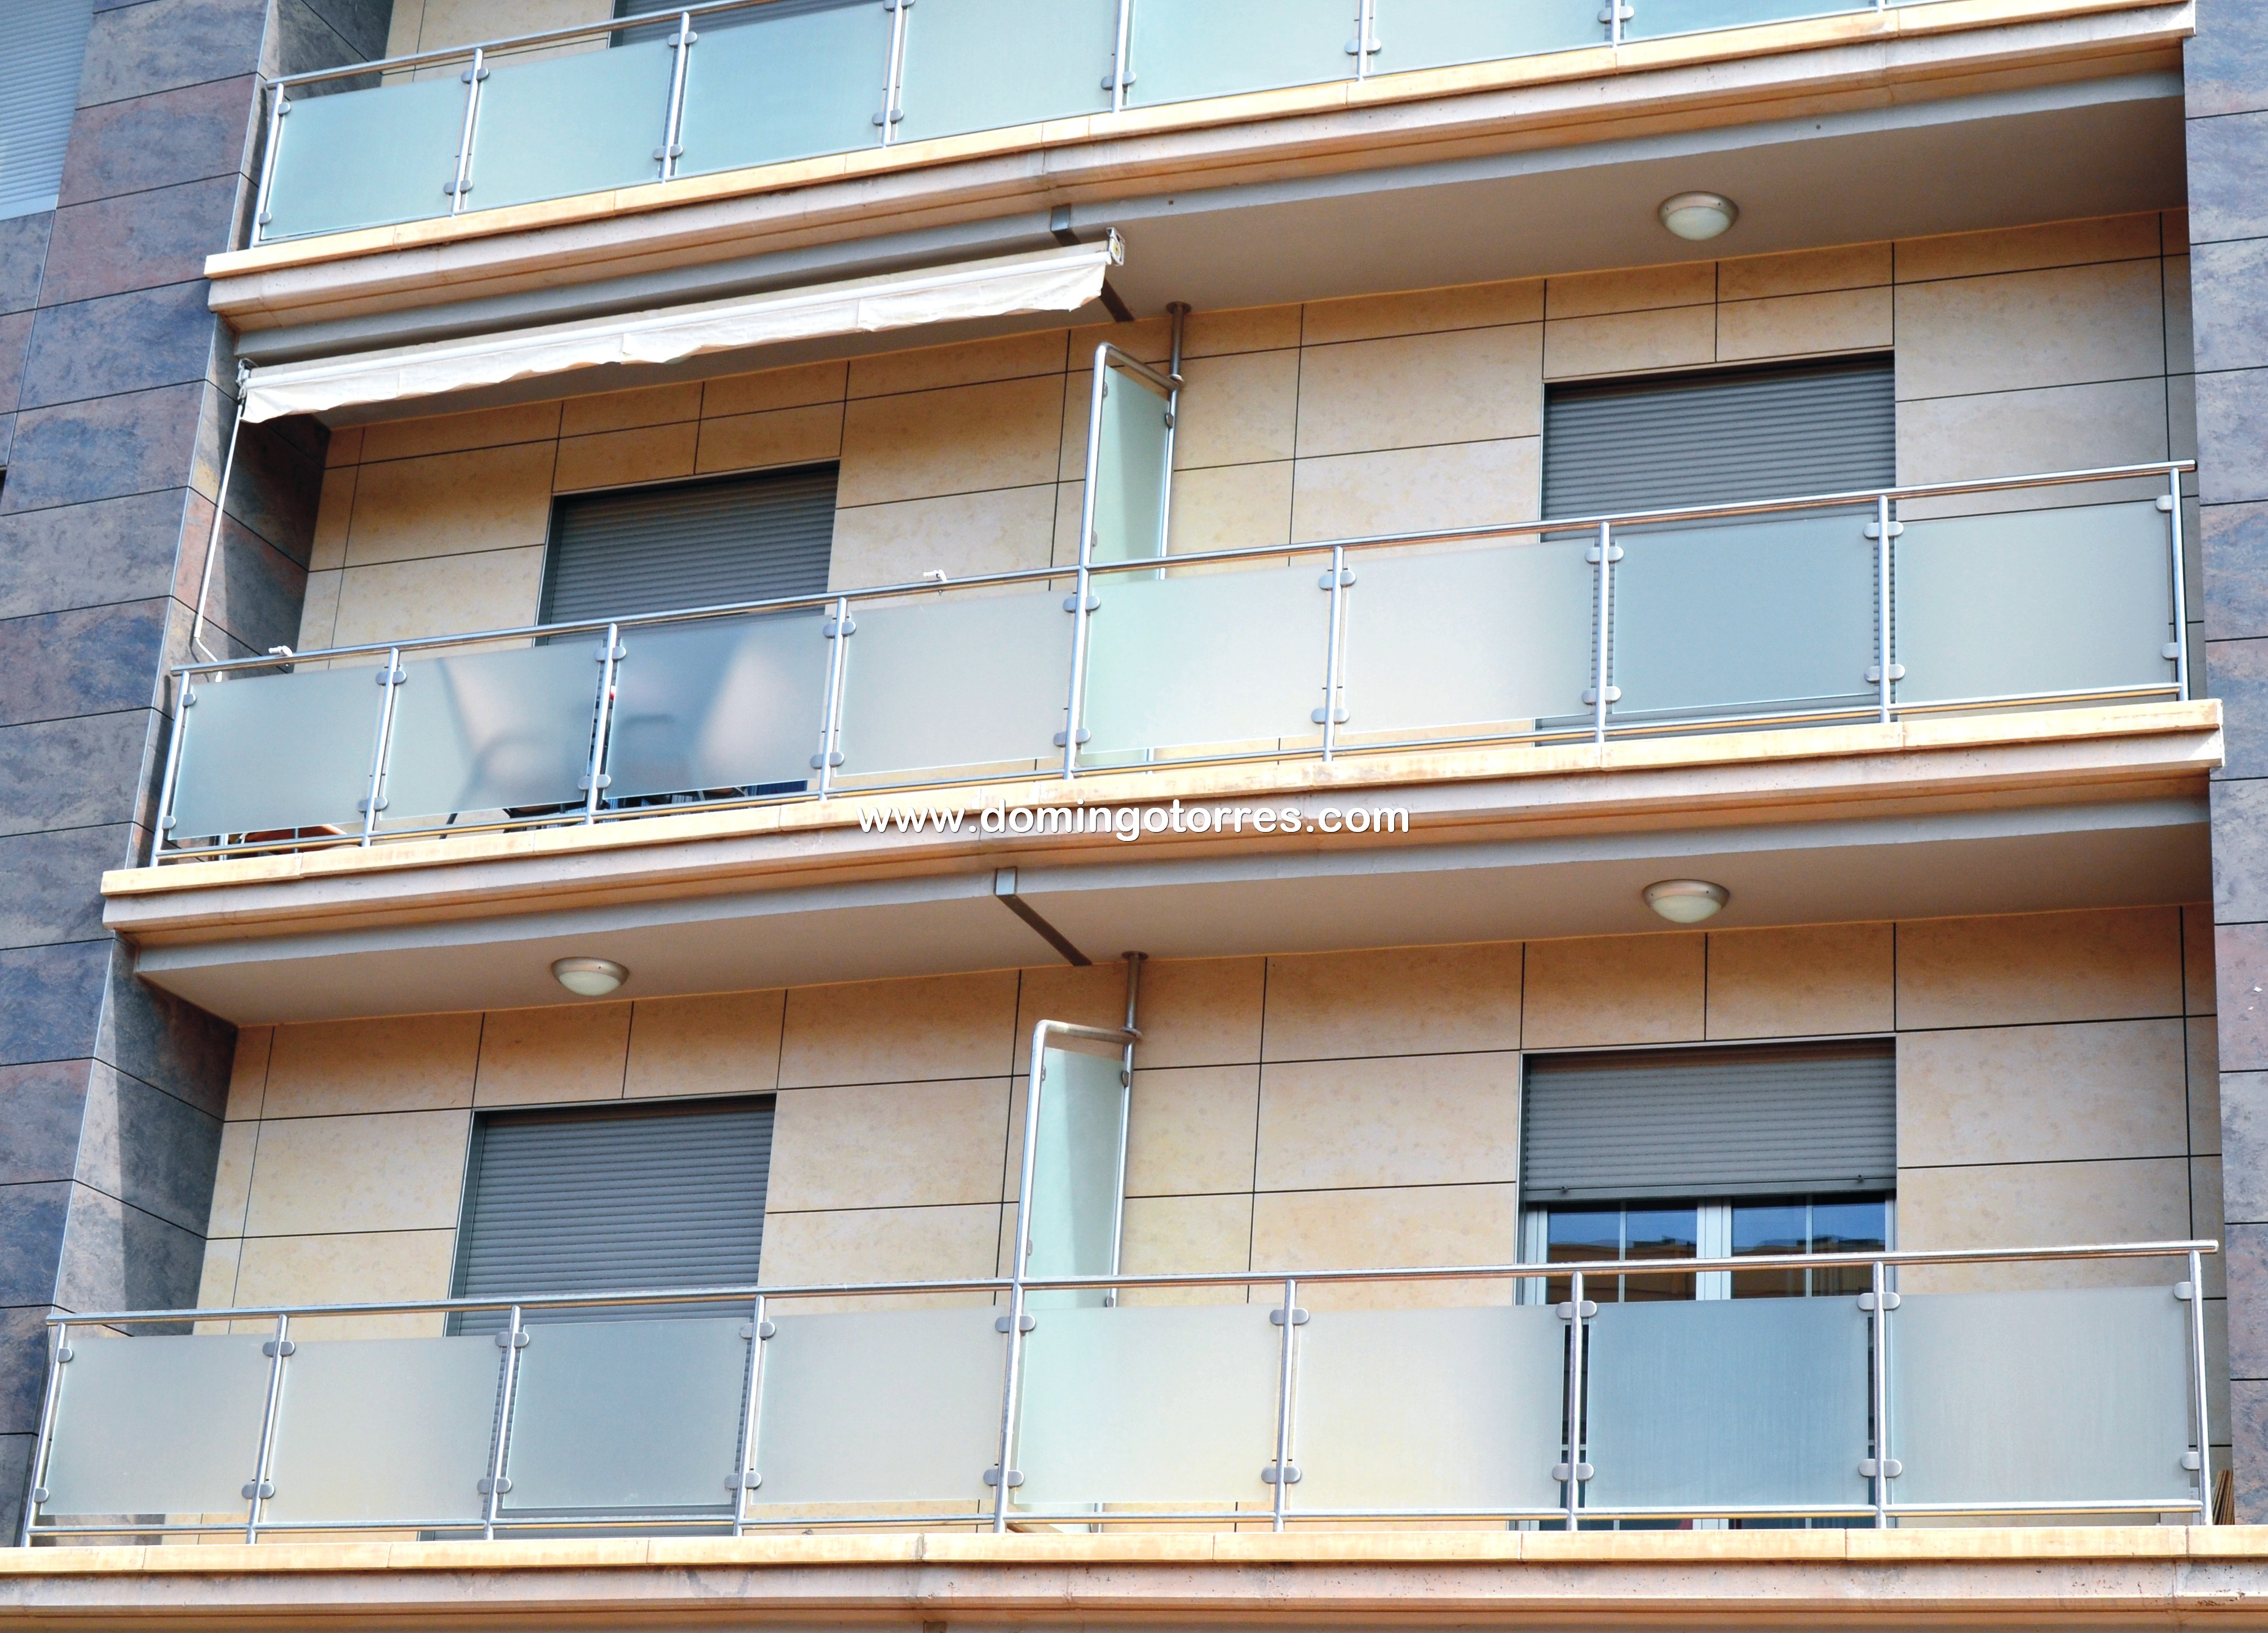 Nº8440 Foto edificio con balcones de acero inoxidable y cristal